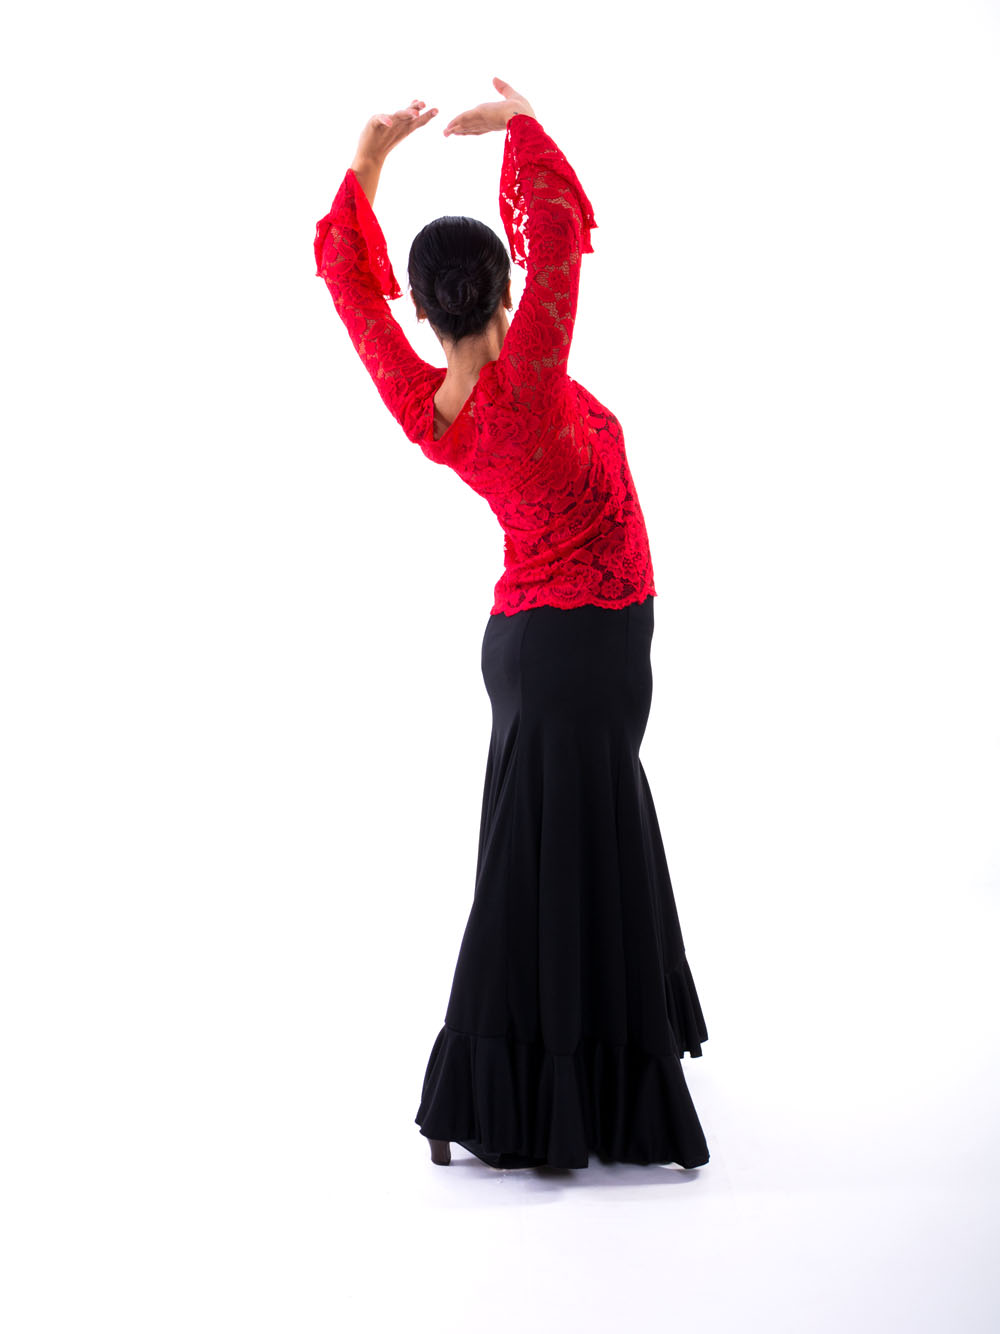  Falda Flamenca Barata